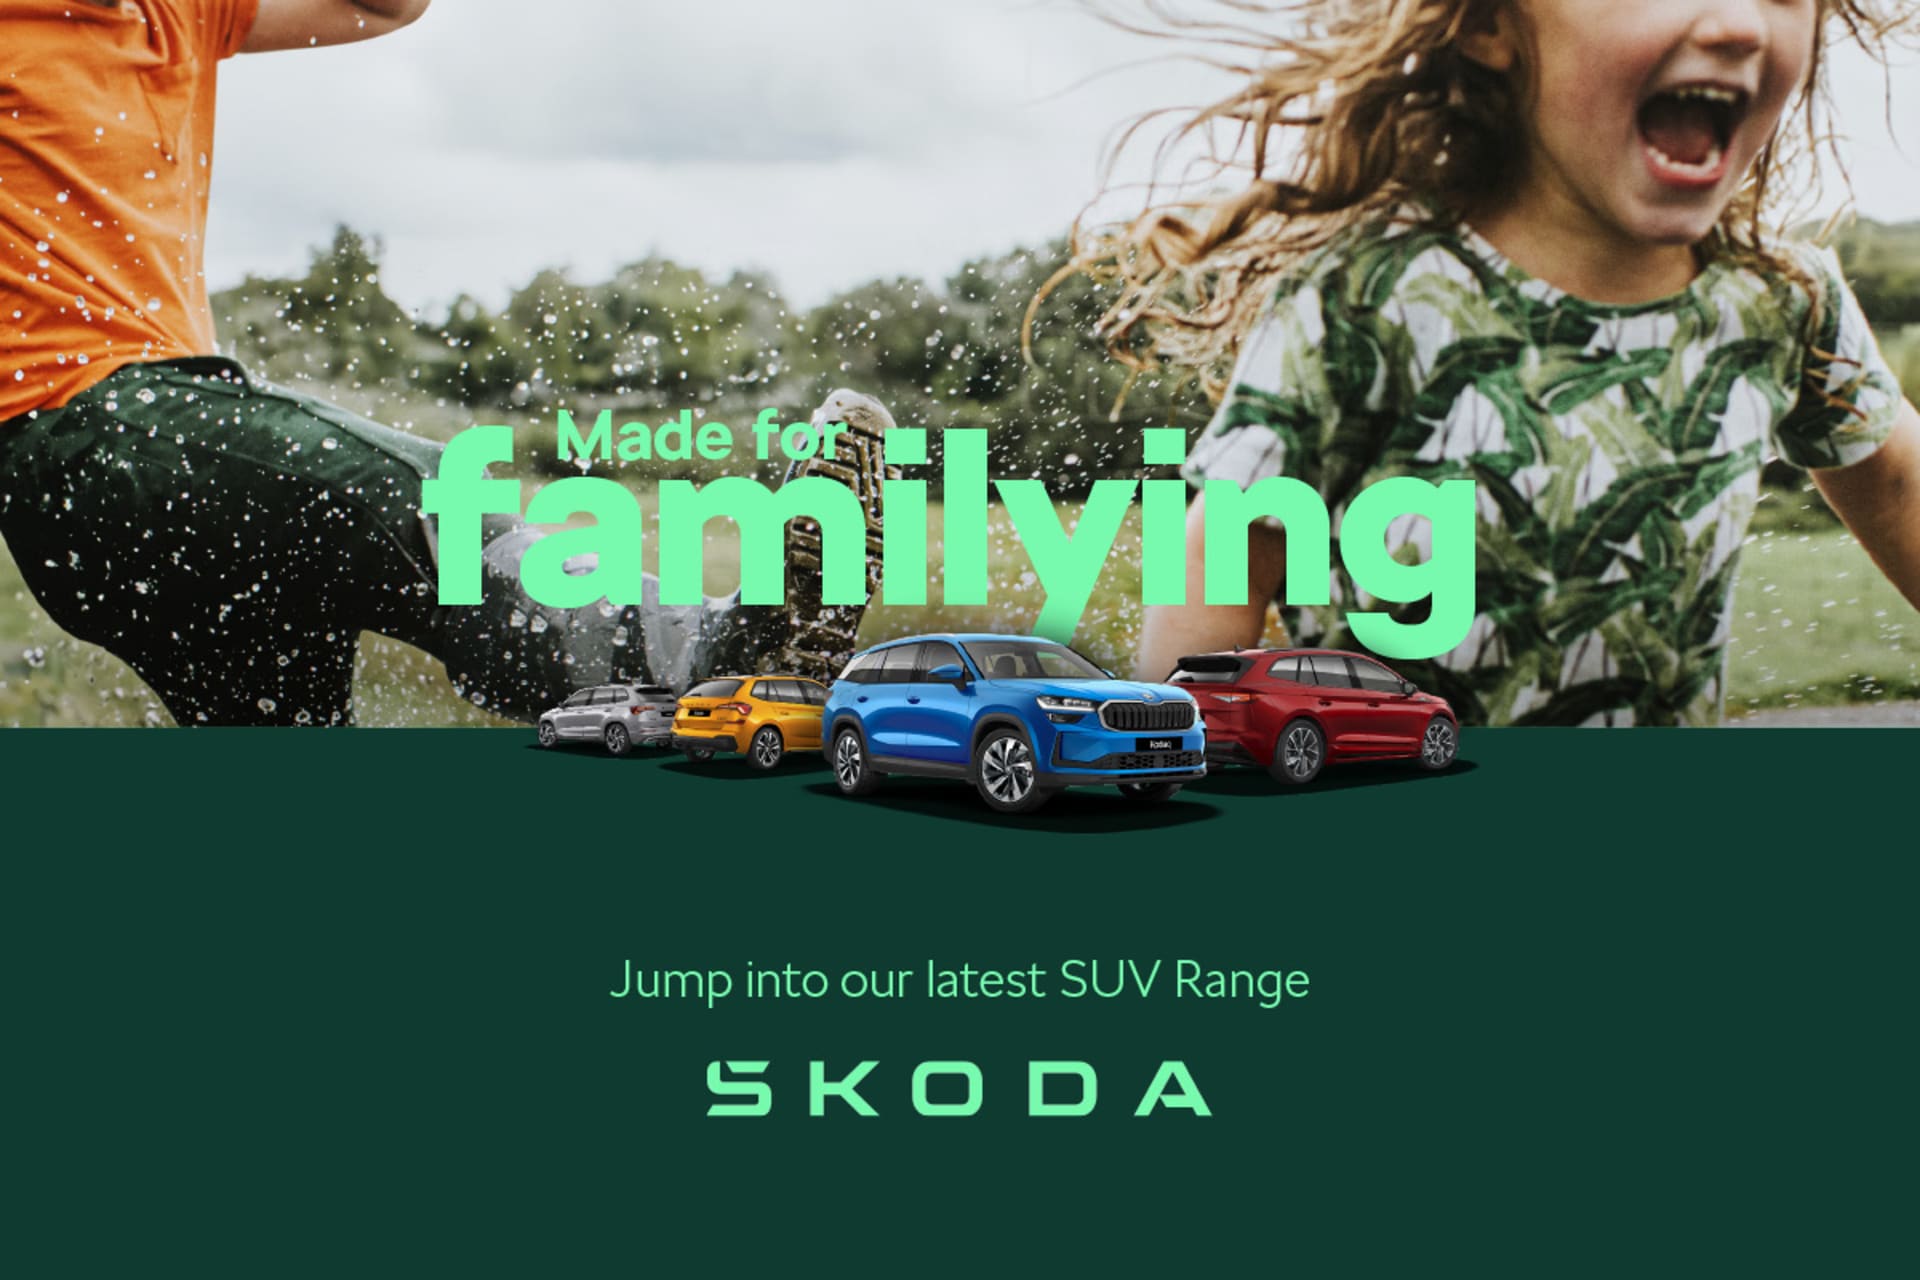 Škoda - Made For Familying